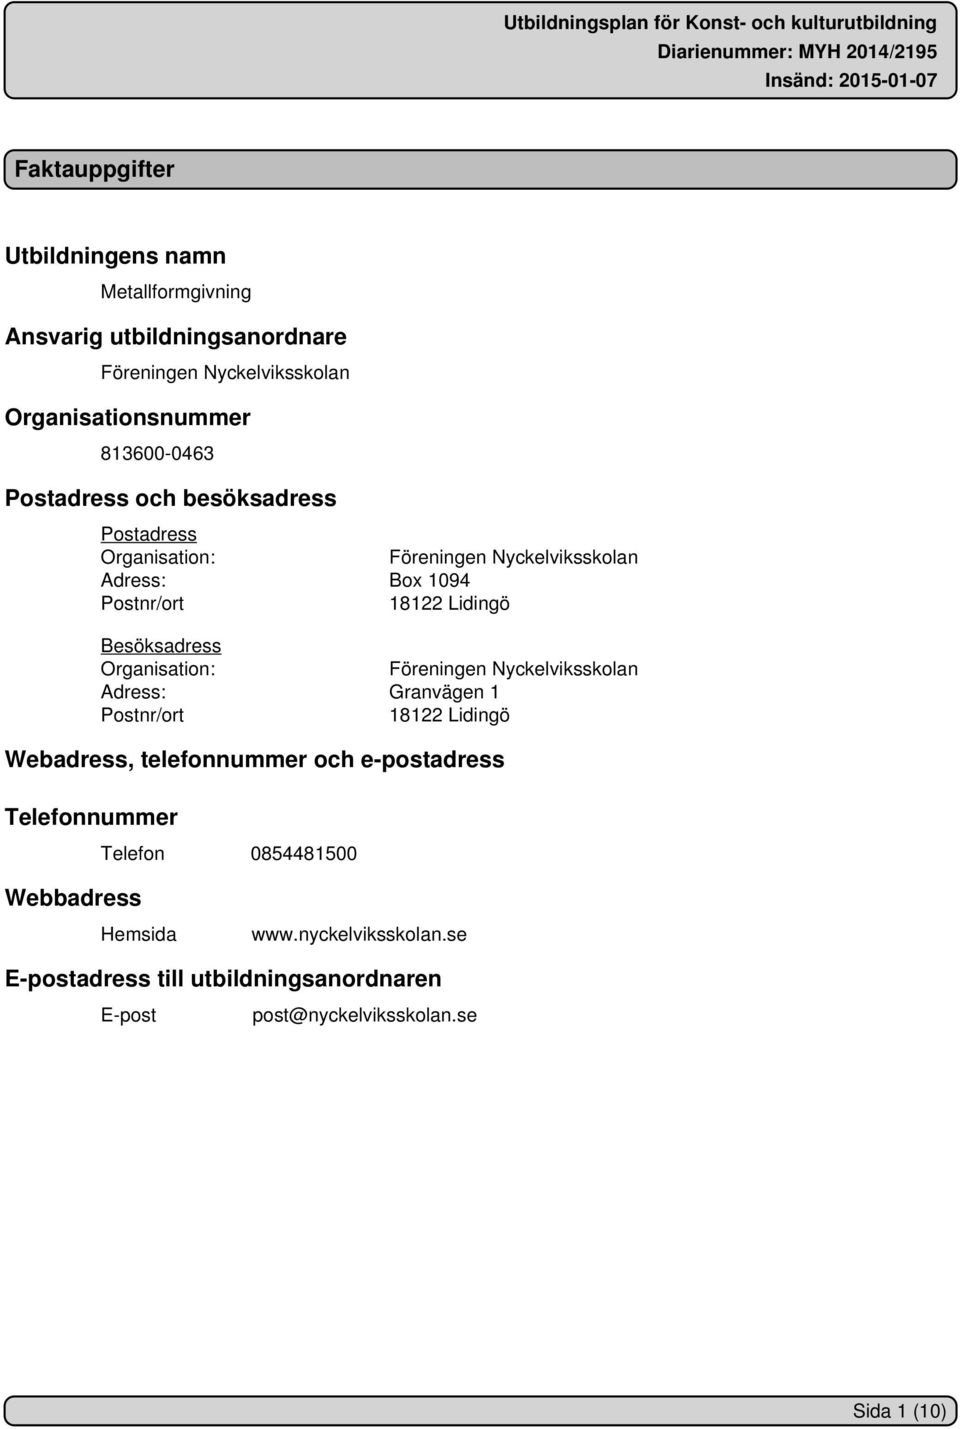 Organisation: Föreningen Nyckelviksskolan Adress: Granvägen 1 Postnr/ort 18122 Lidingö Webadress, telefonnummer och e-postadress